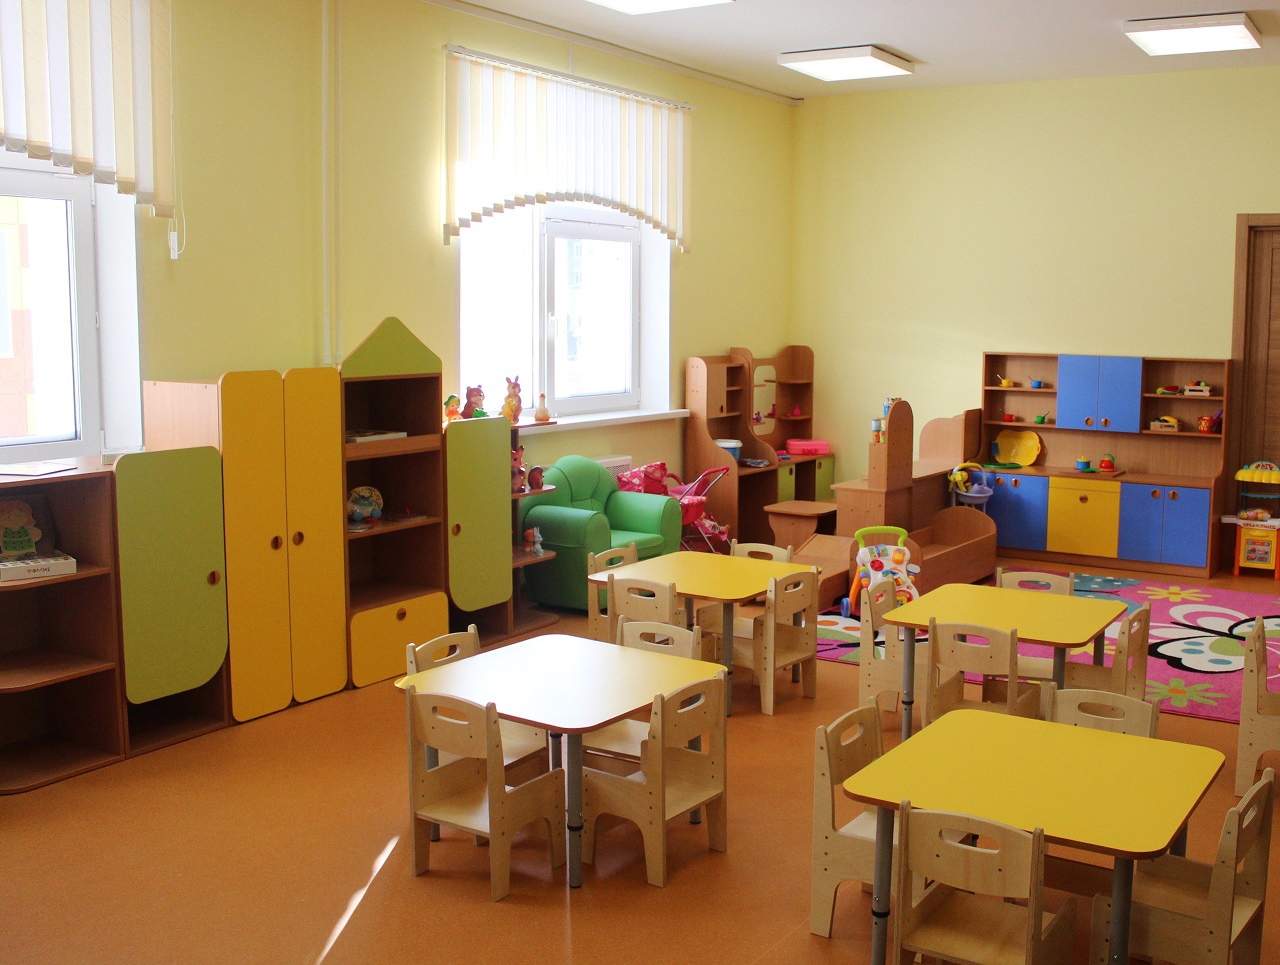 «Белый дом» строит социальные объекты в разных районах Архангельской области, один из них — это детский сад «Колобок» в Котласе